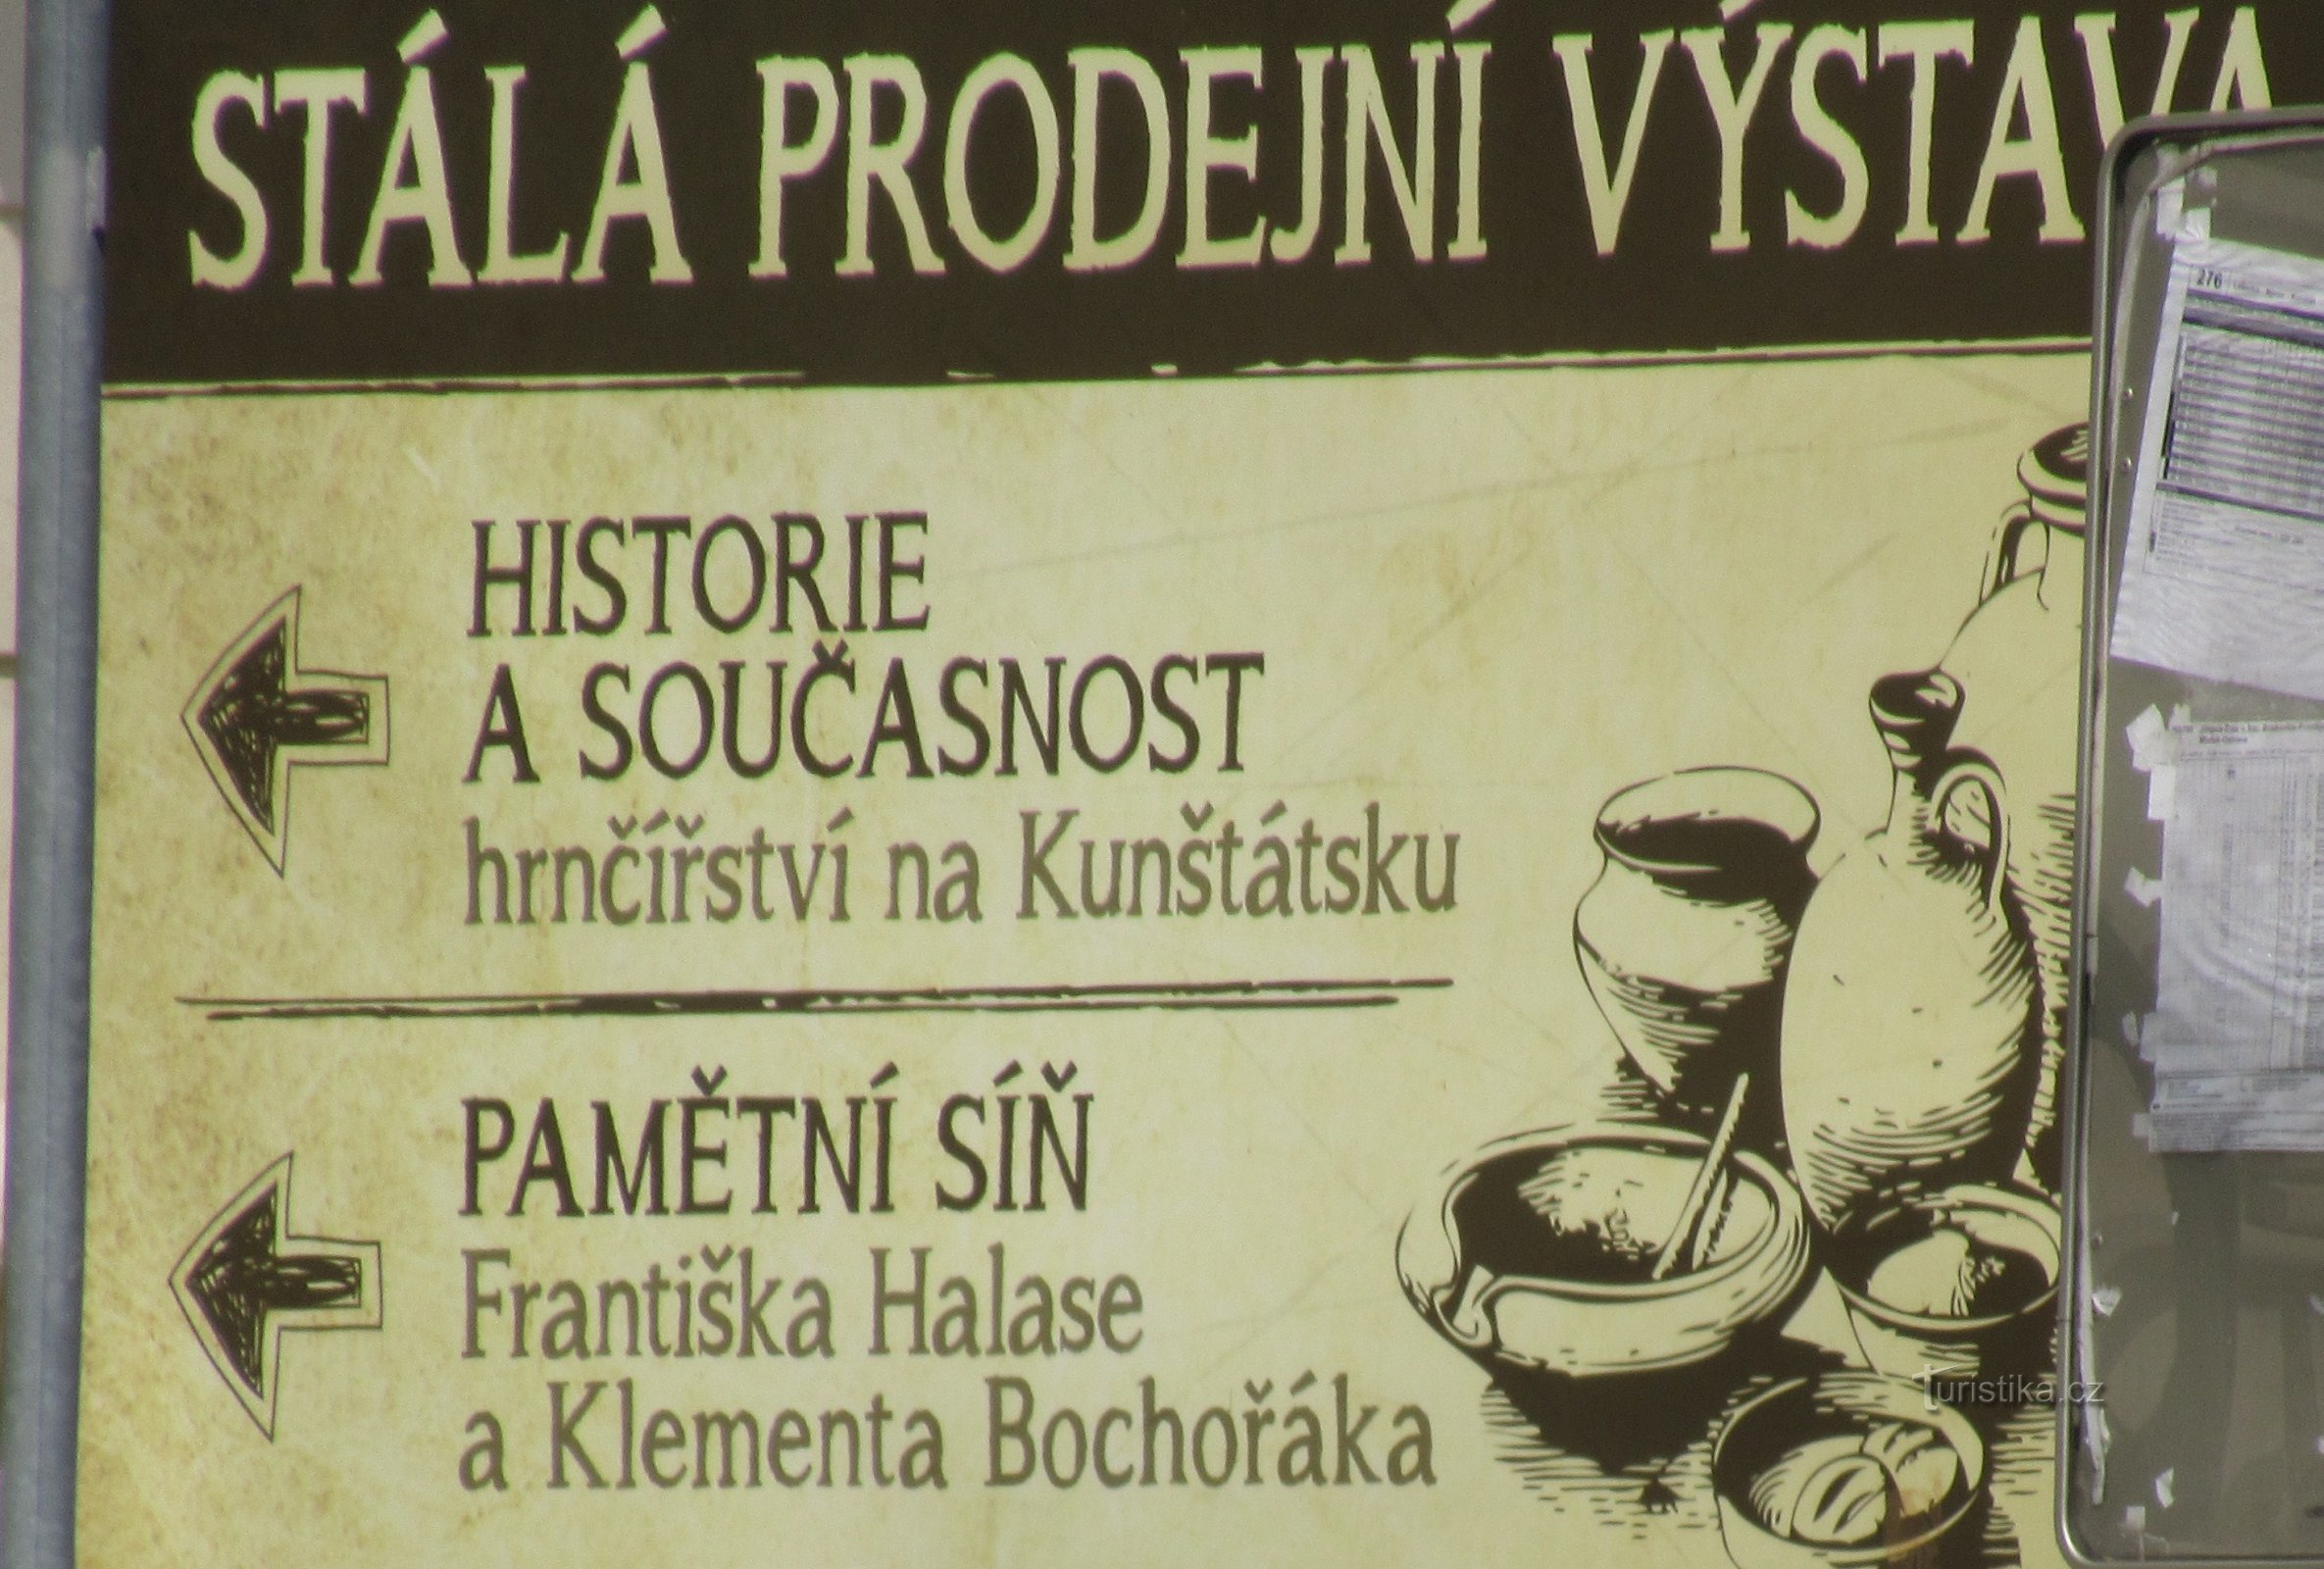 Exposición de cerámica en el Infocentro de la ciudad de Kunštát